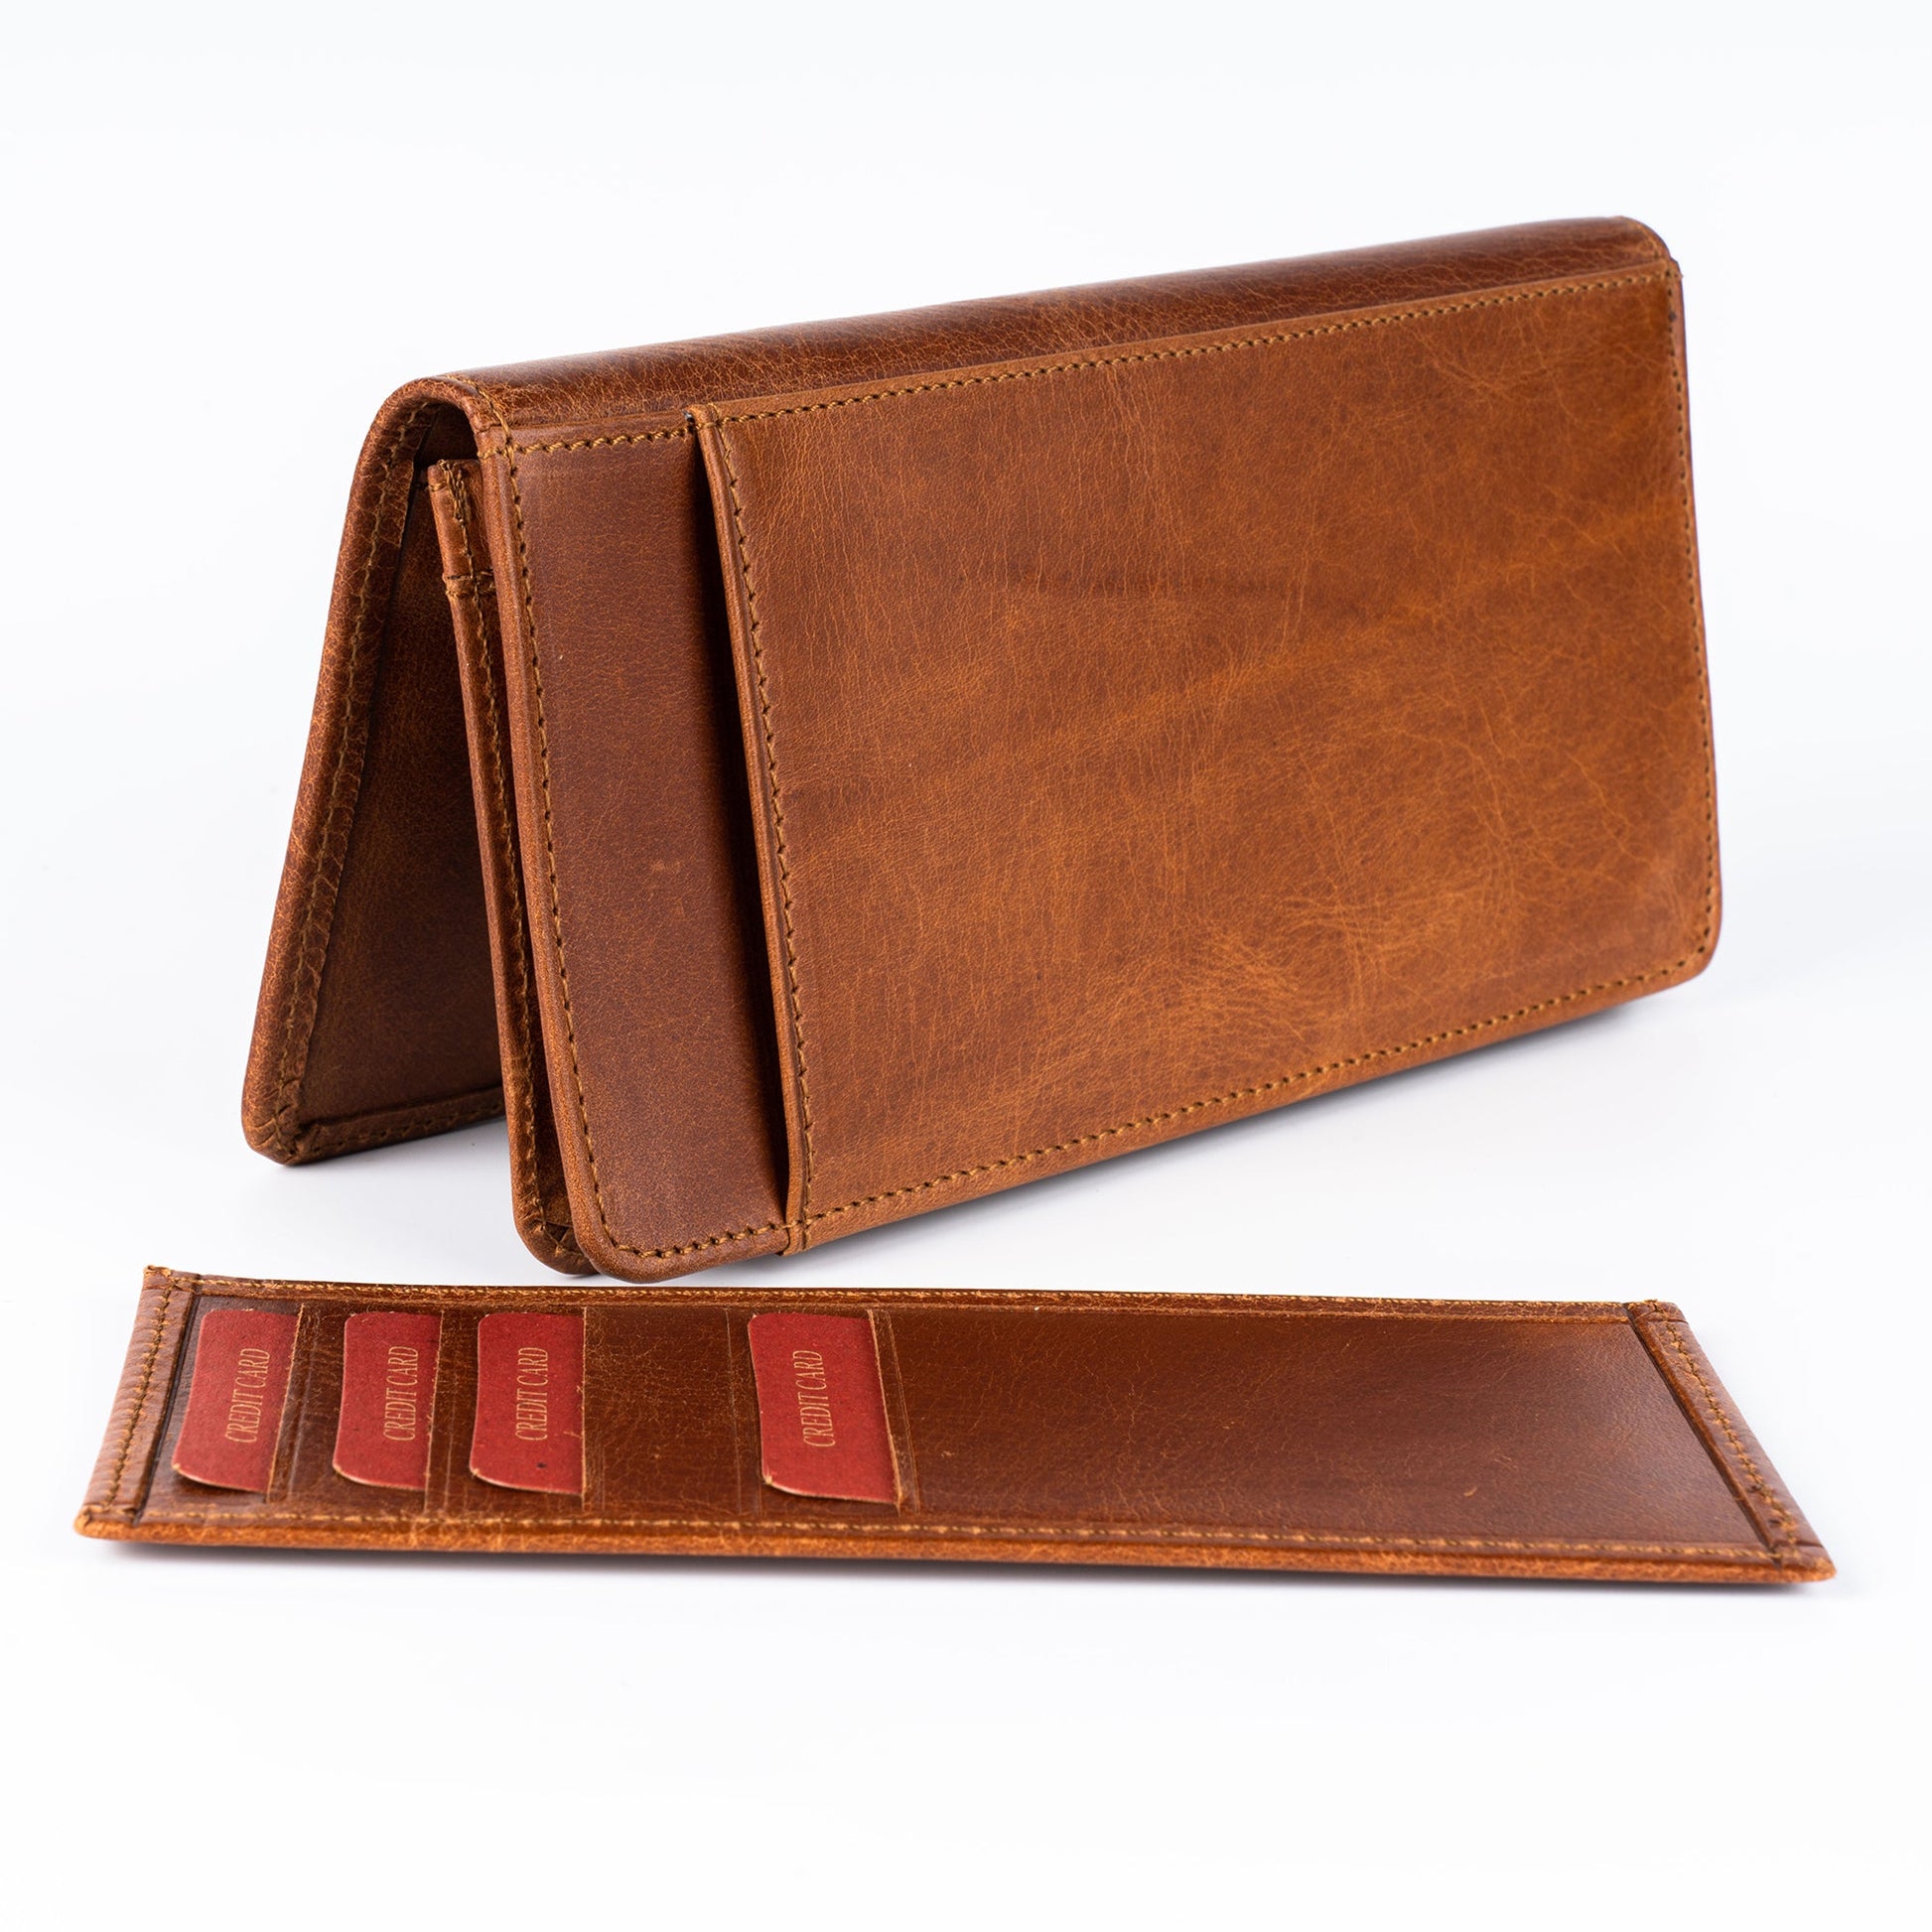 Melissa Women’s Leather Long Wallet - Tan - Wallets Zengoda Shop online from Artisan Brands